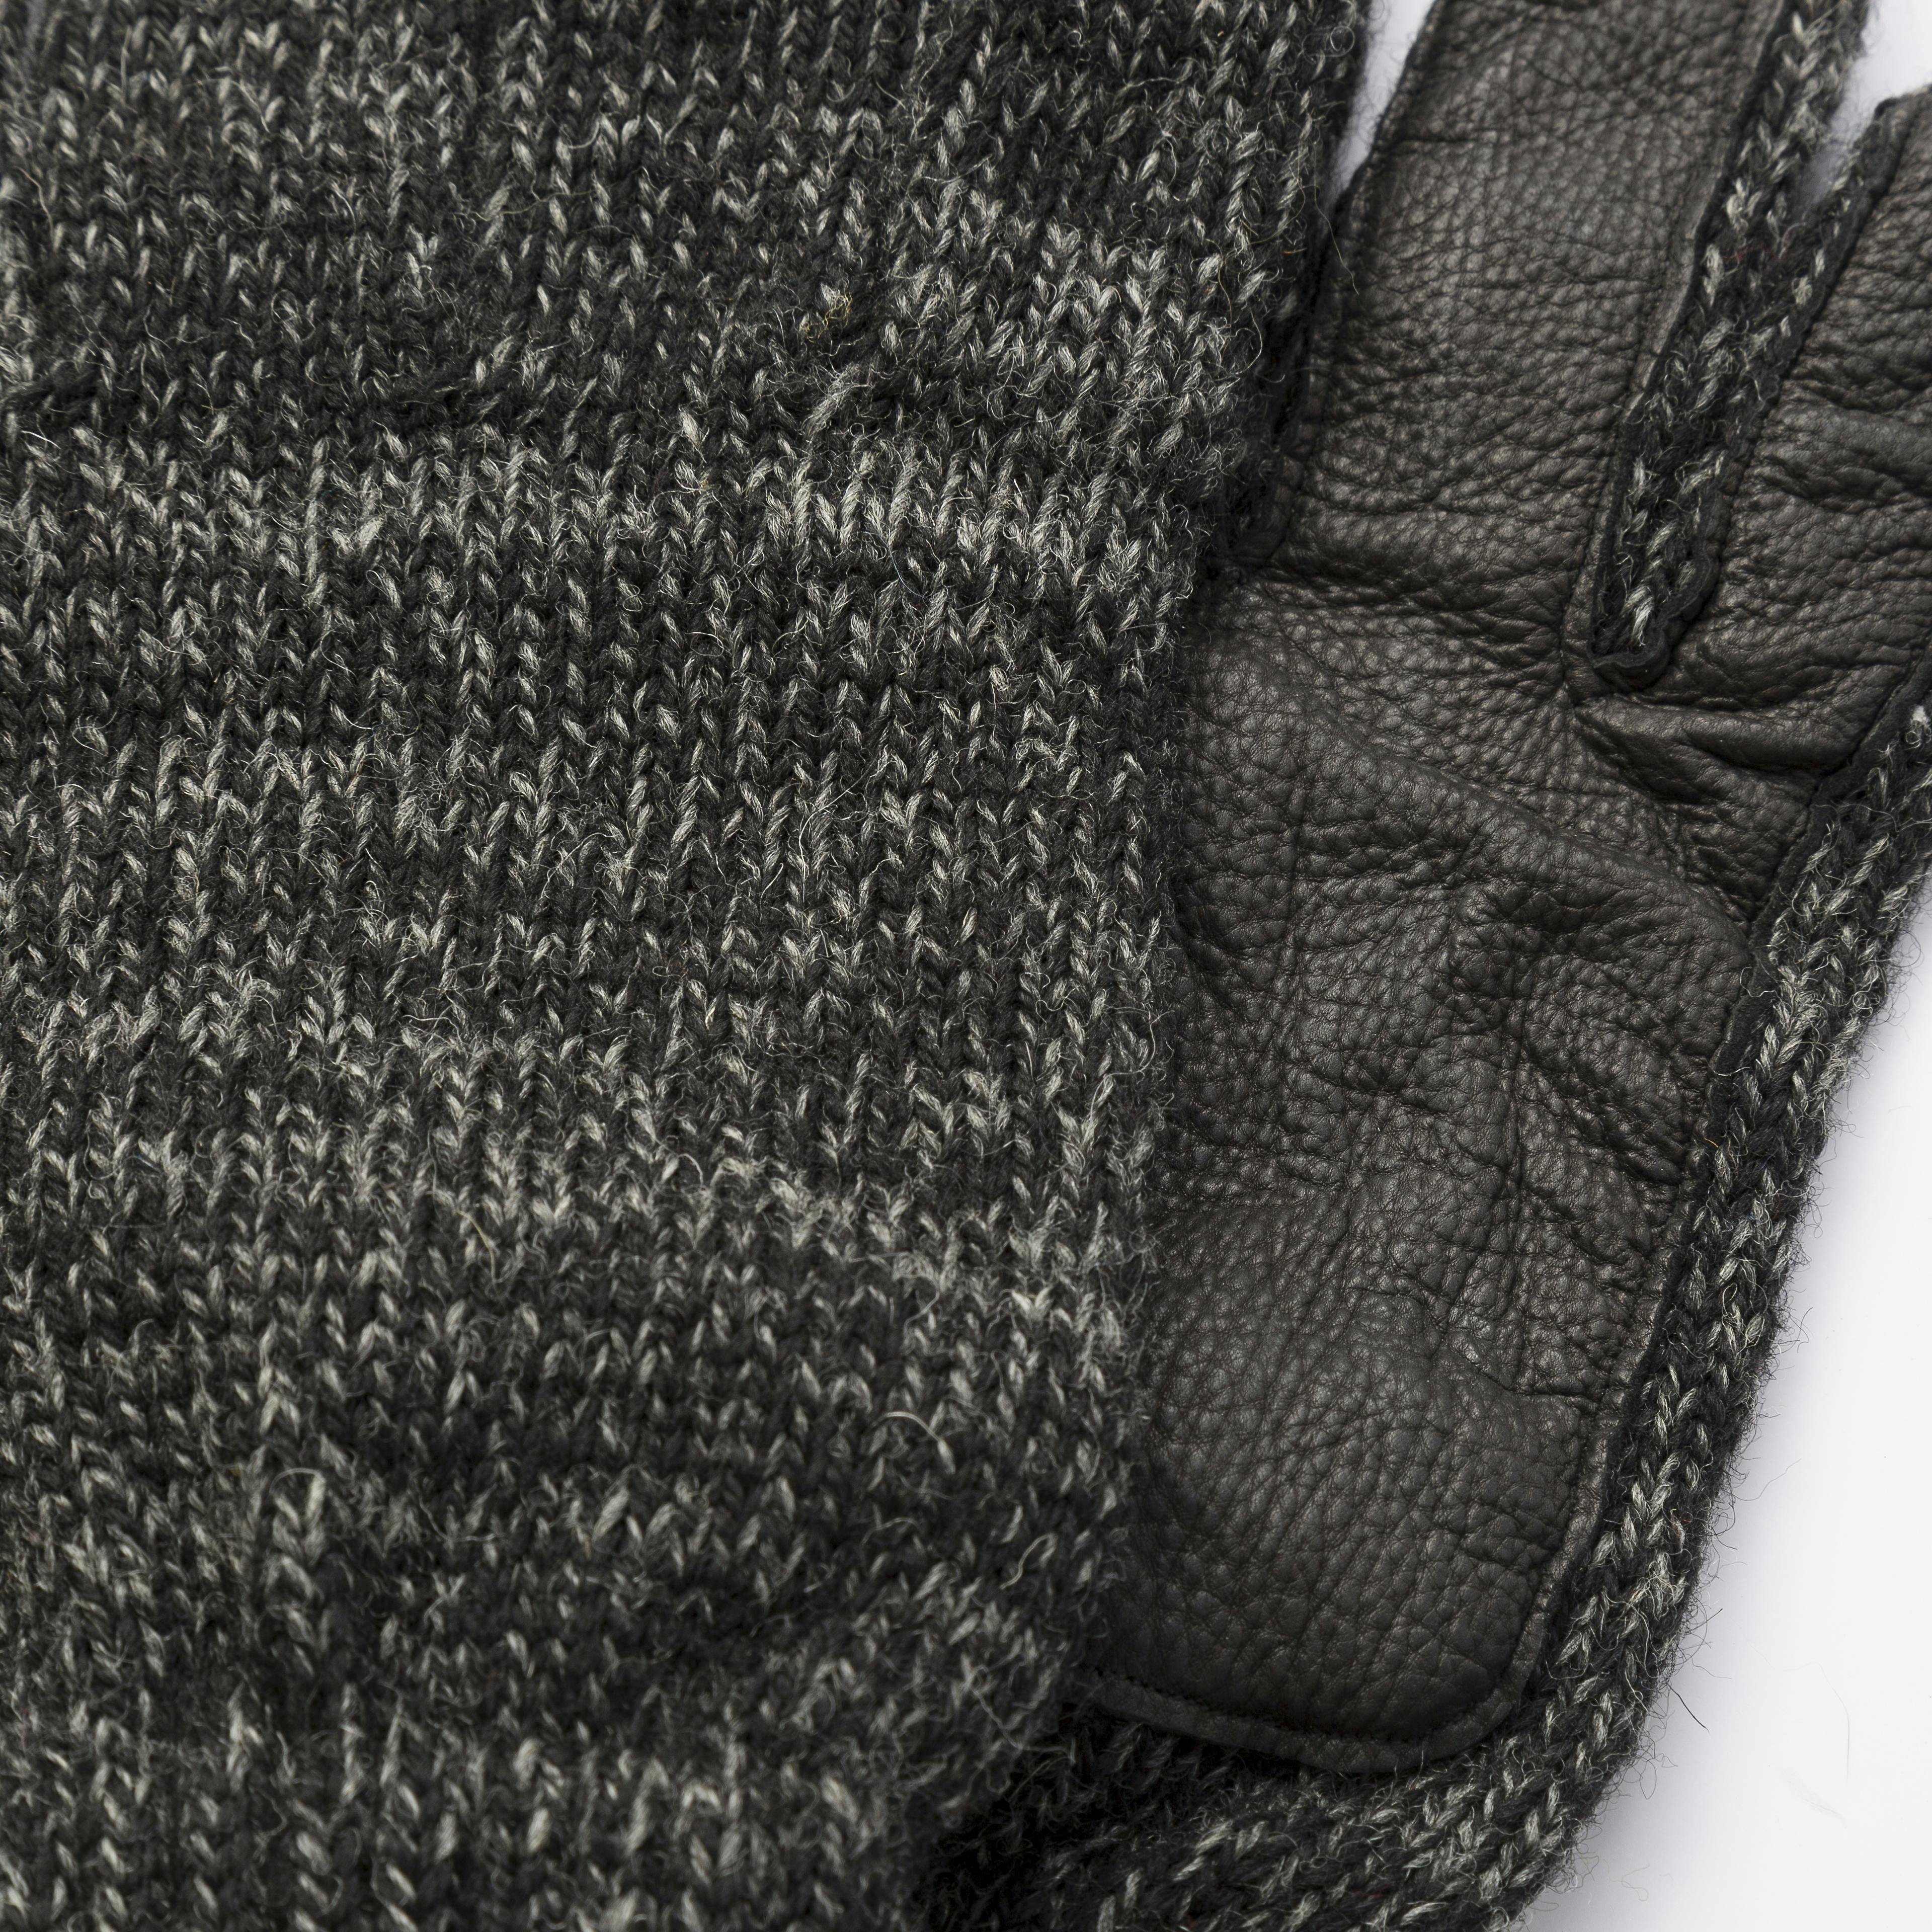 Upstate Stock Full-Finger Melange Wool Glove